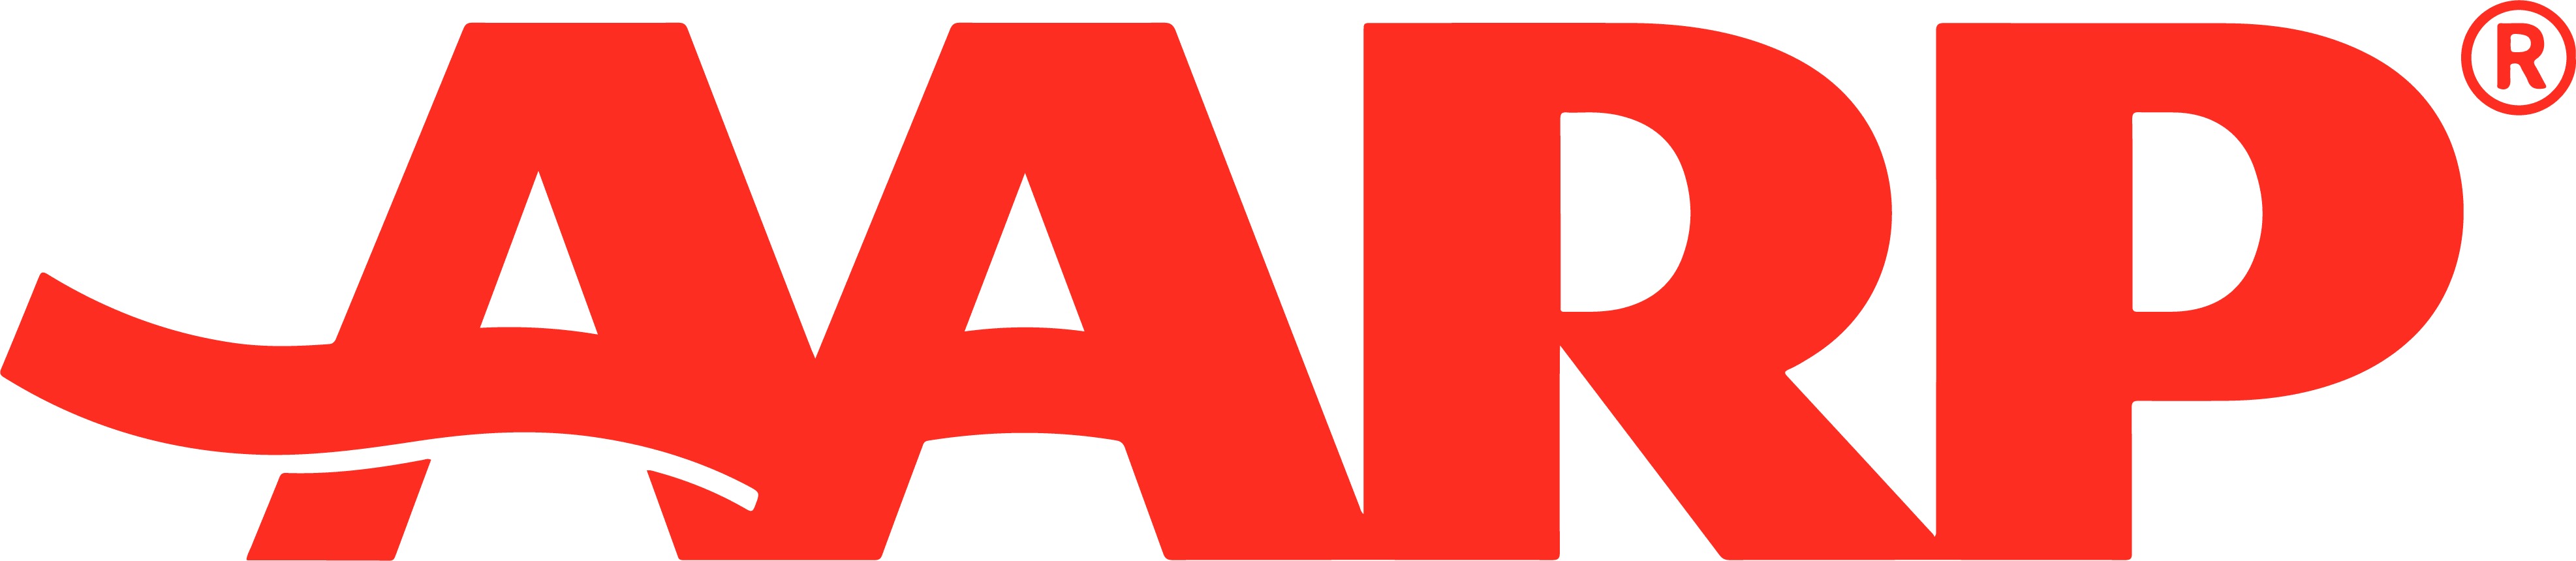 Aarp_logo_PNG3